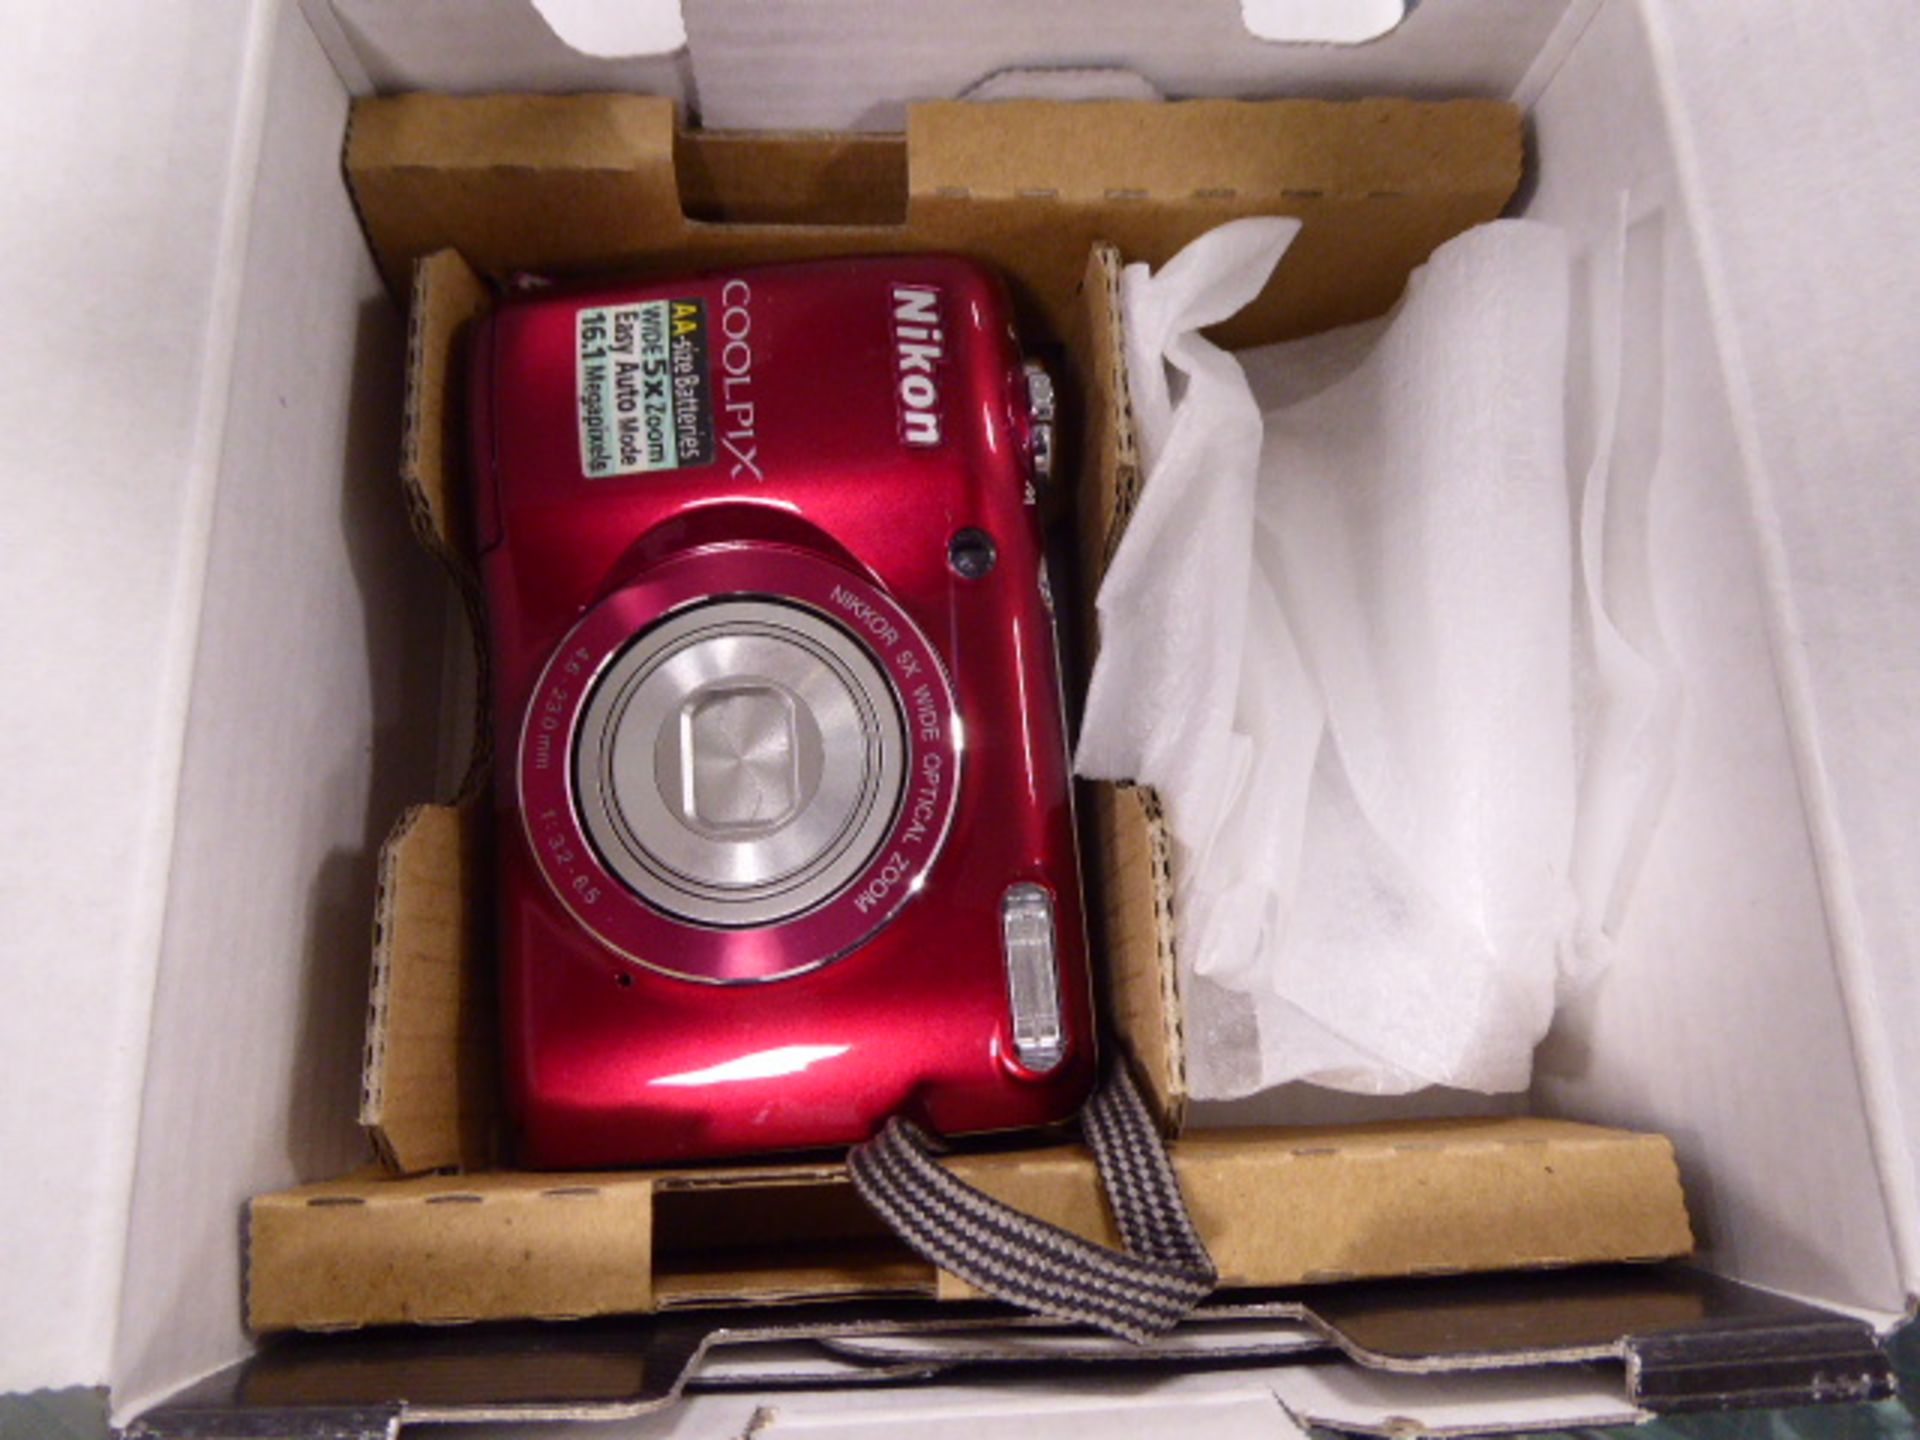 Nikkon Coolpix L26 camera in box